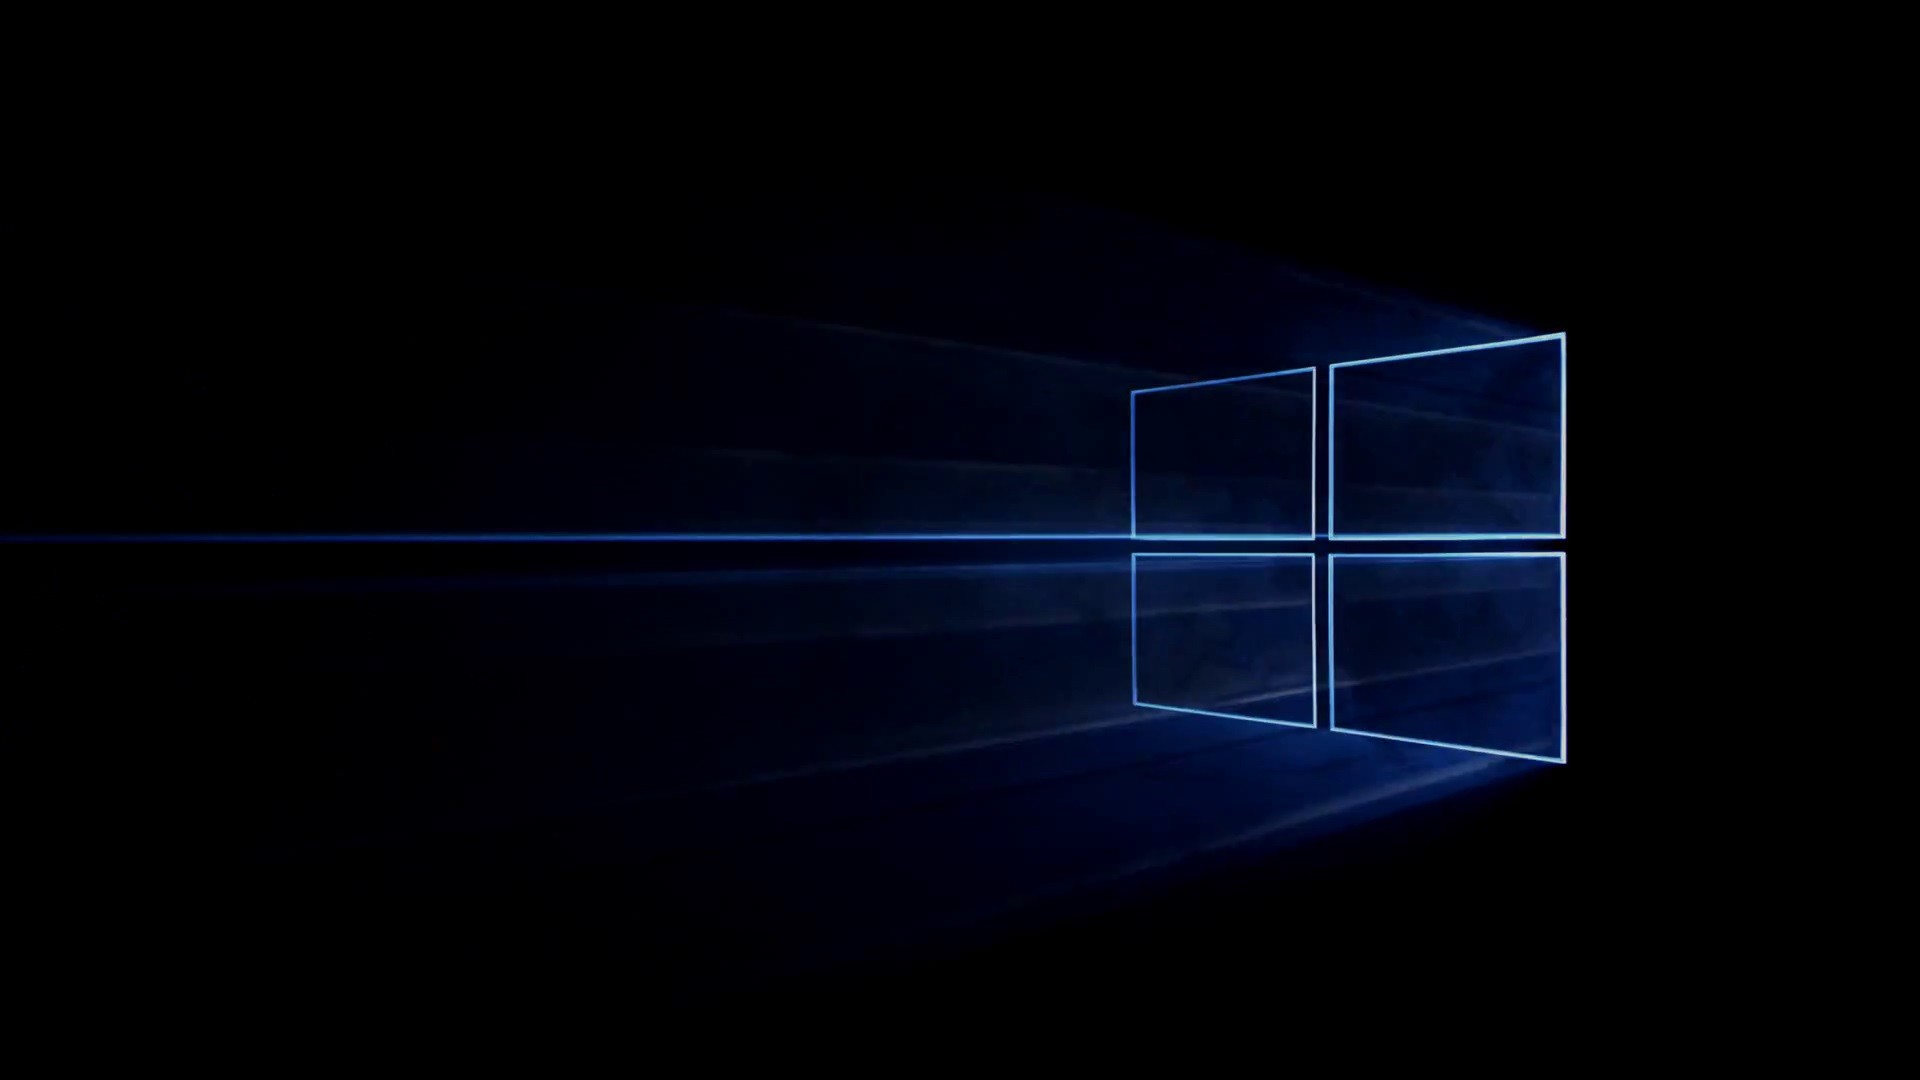 Tổng hợp 50+ hình nền win 10 đẹp nhất - Hình nền máy tính | Windows 10  logo, Windows 10, Wallpaper windows 10